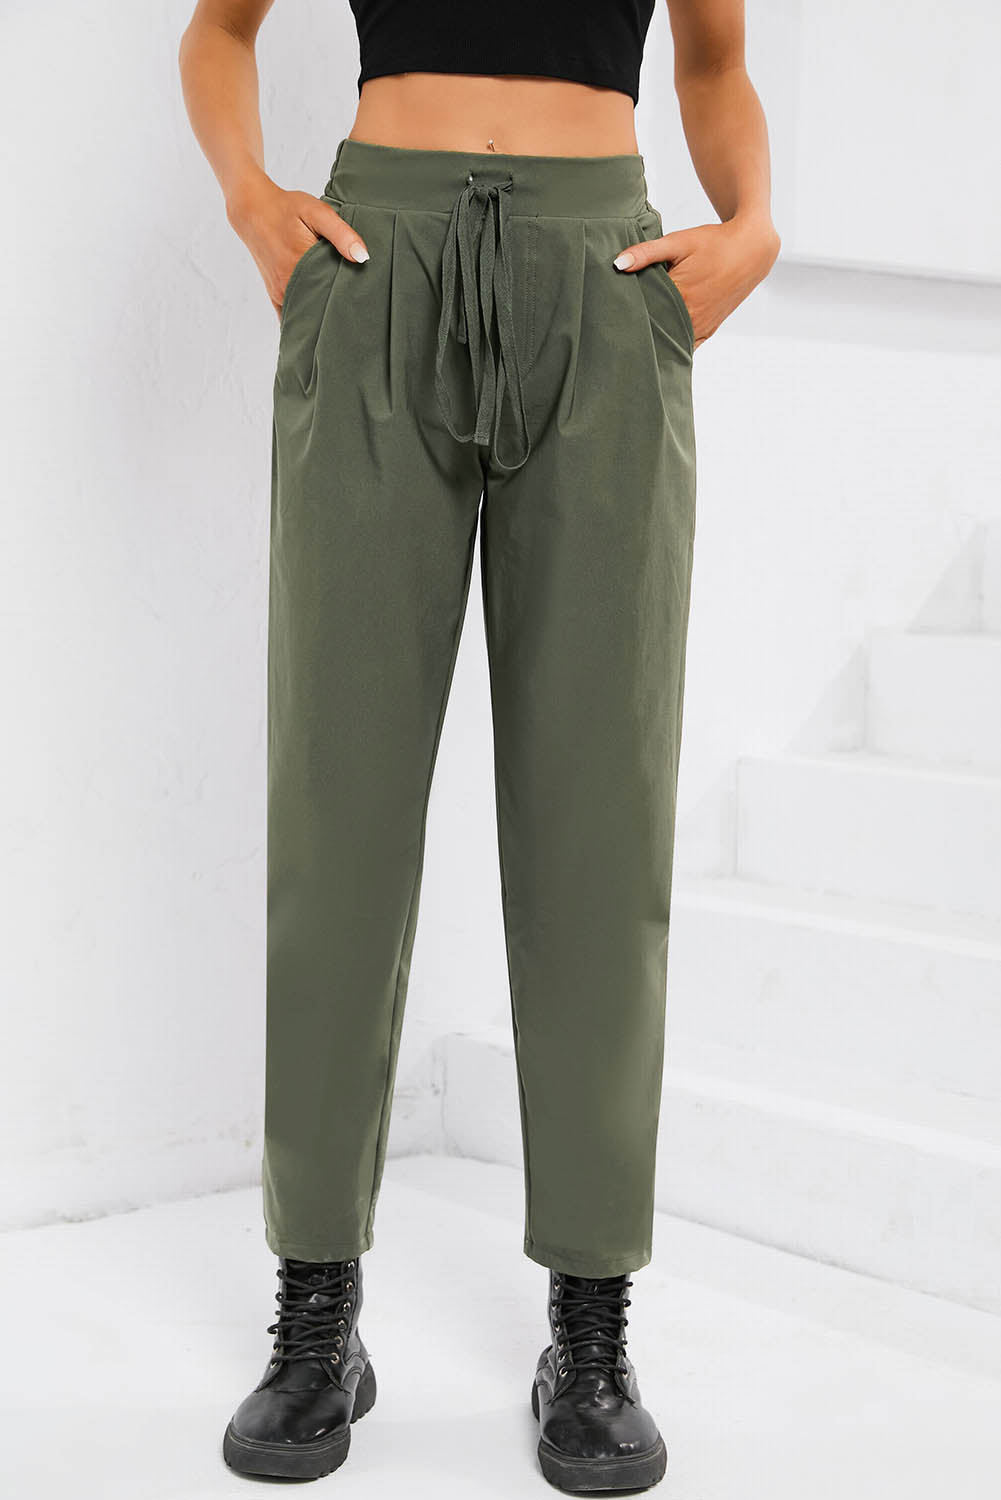 Pantalon décontracté vert à taille élastique avec cordon de serrage